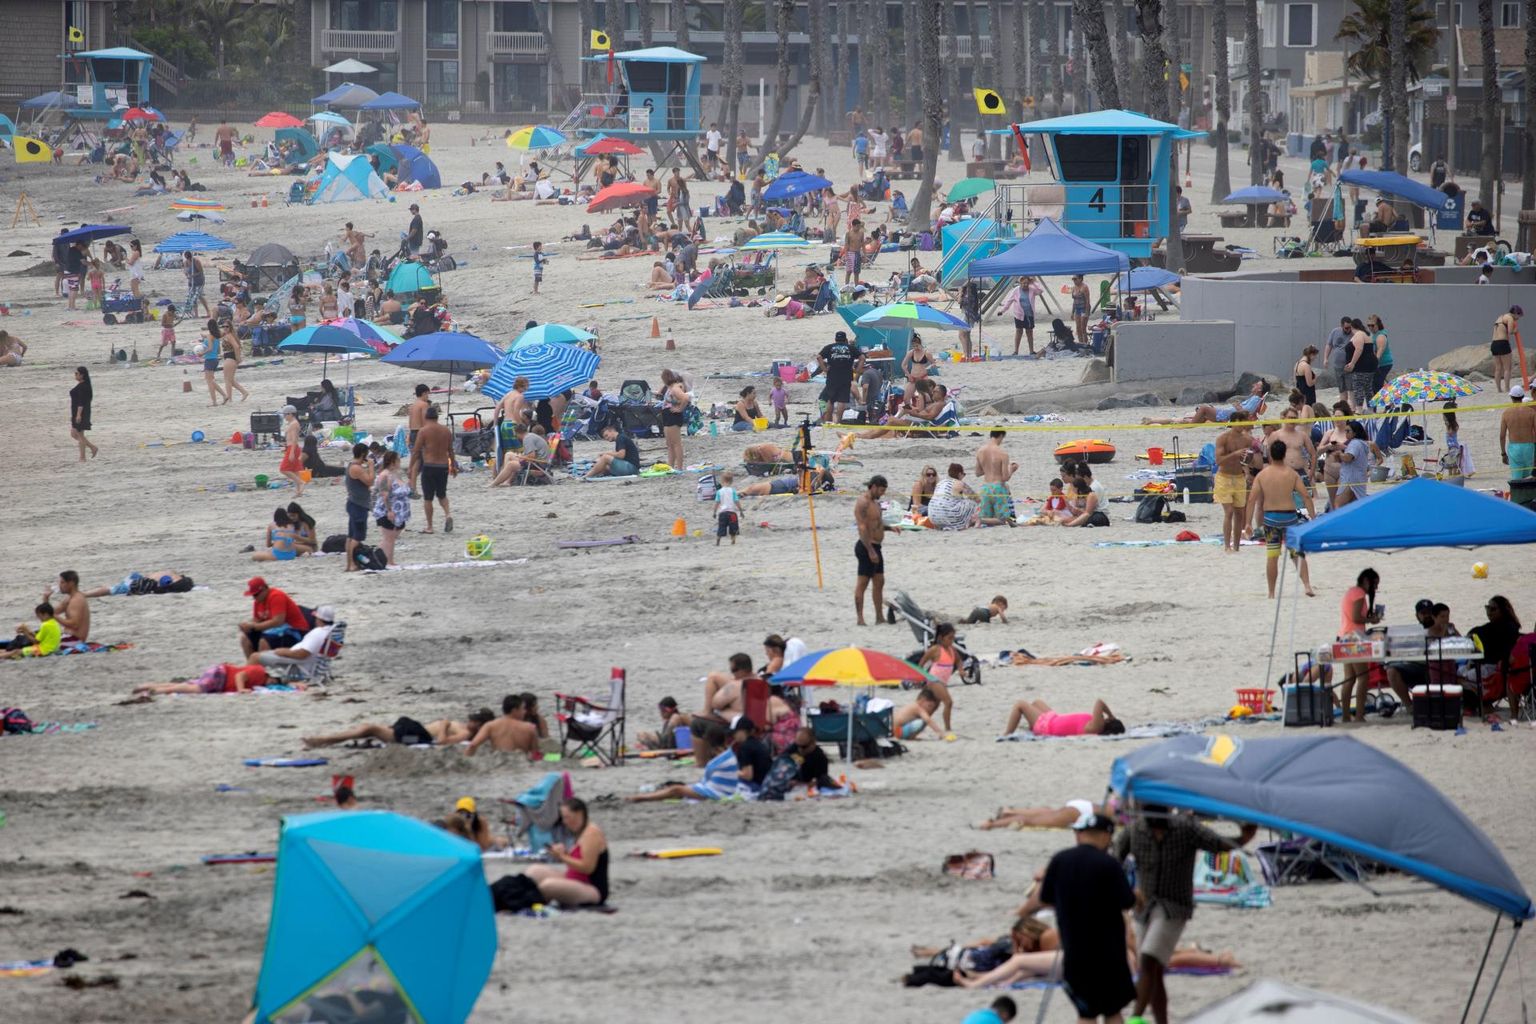 Oceanside’i rand oli nädala alguses rahvast täis, hoolimata California rekordilisest koroonajuhtumite kasvust. 